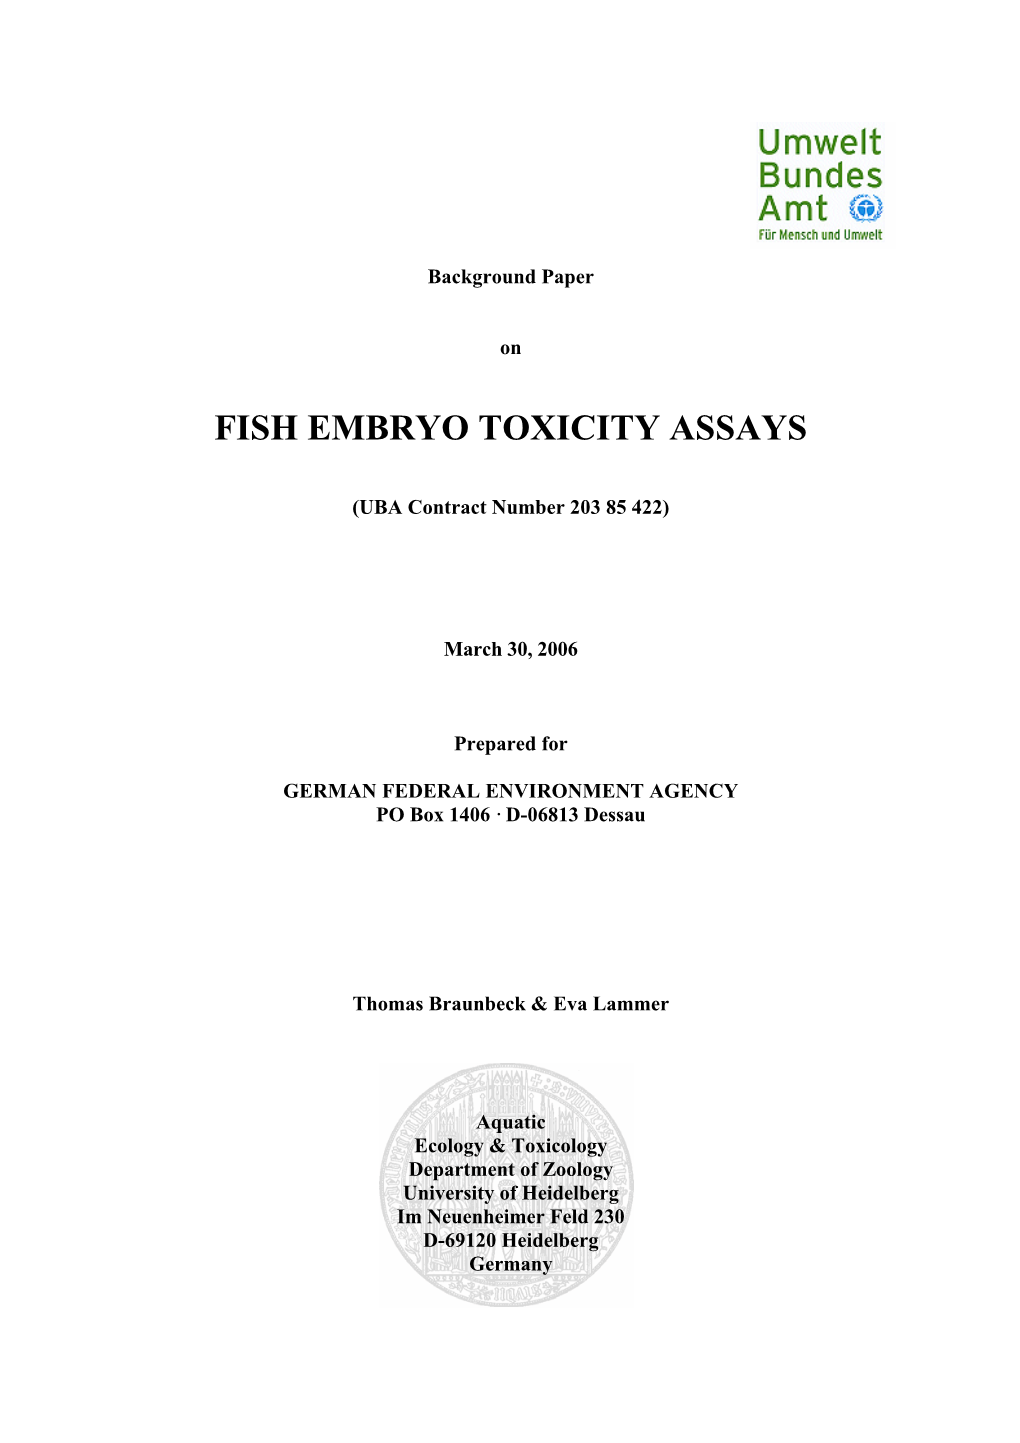 Fish Embryo Toxicity Assays